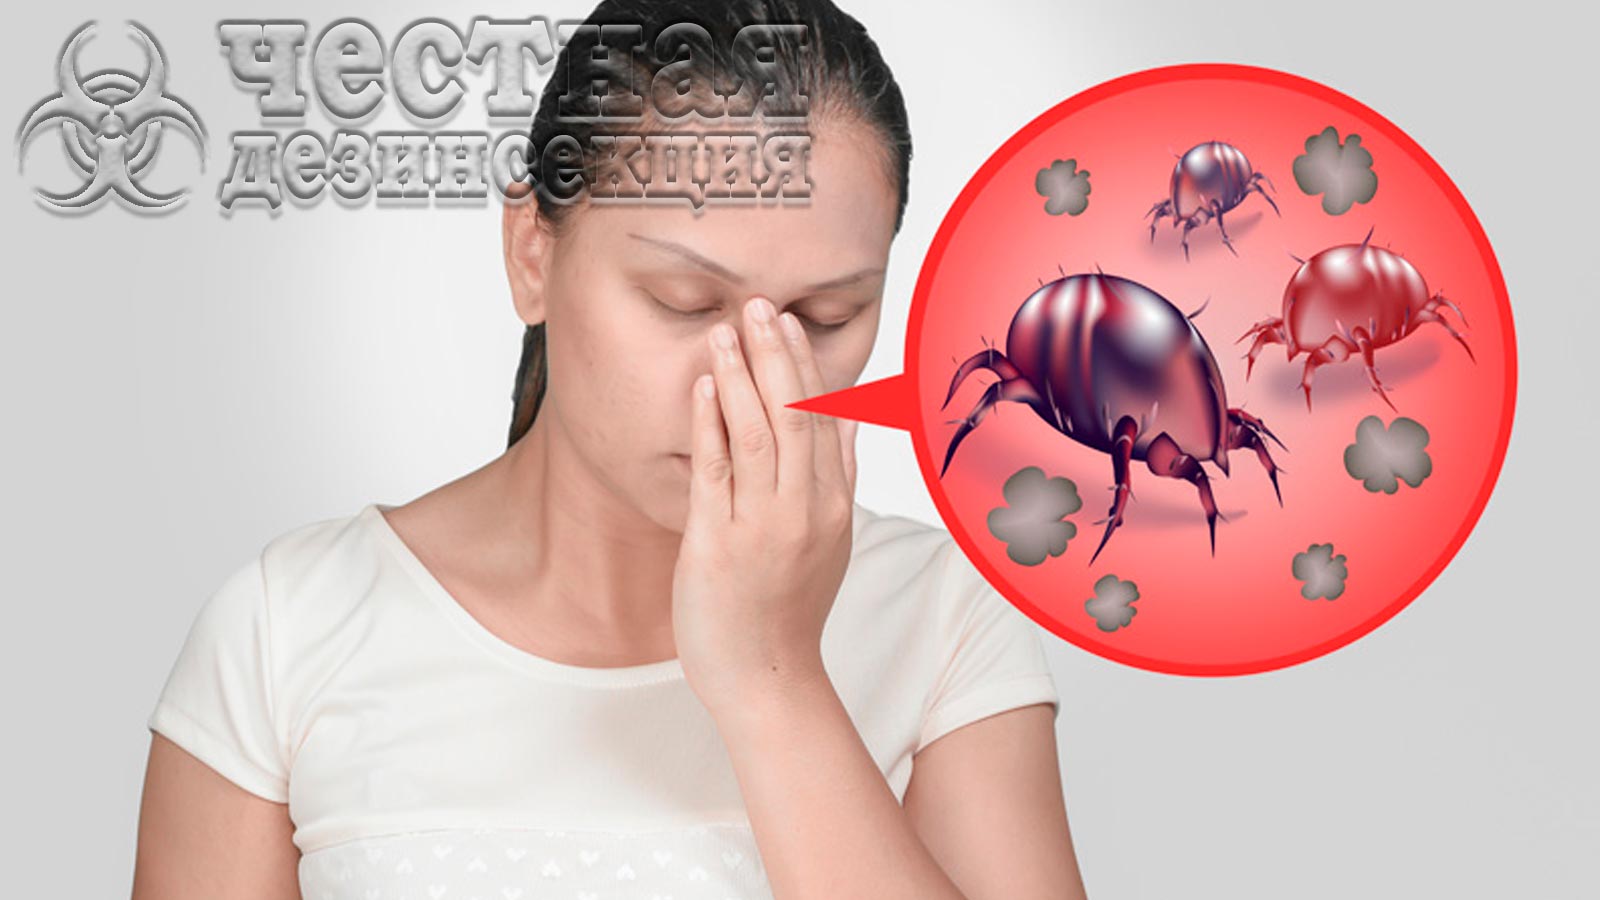 Аллергия на пылевых клещей